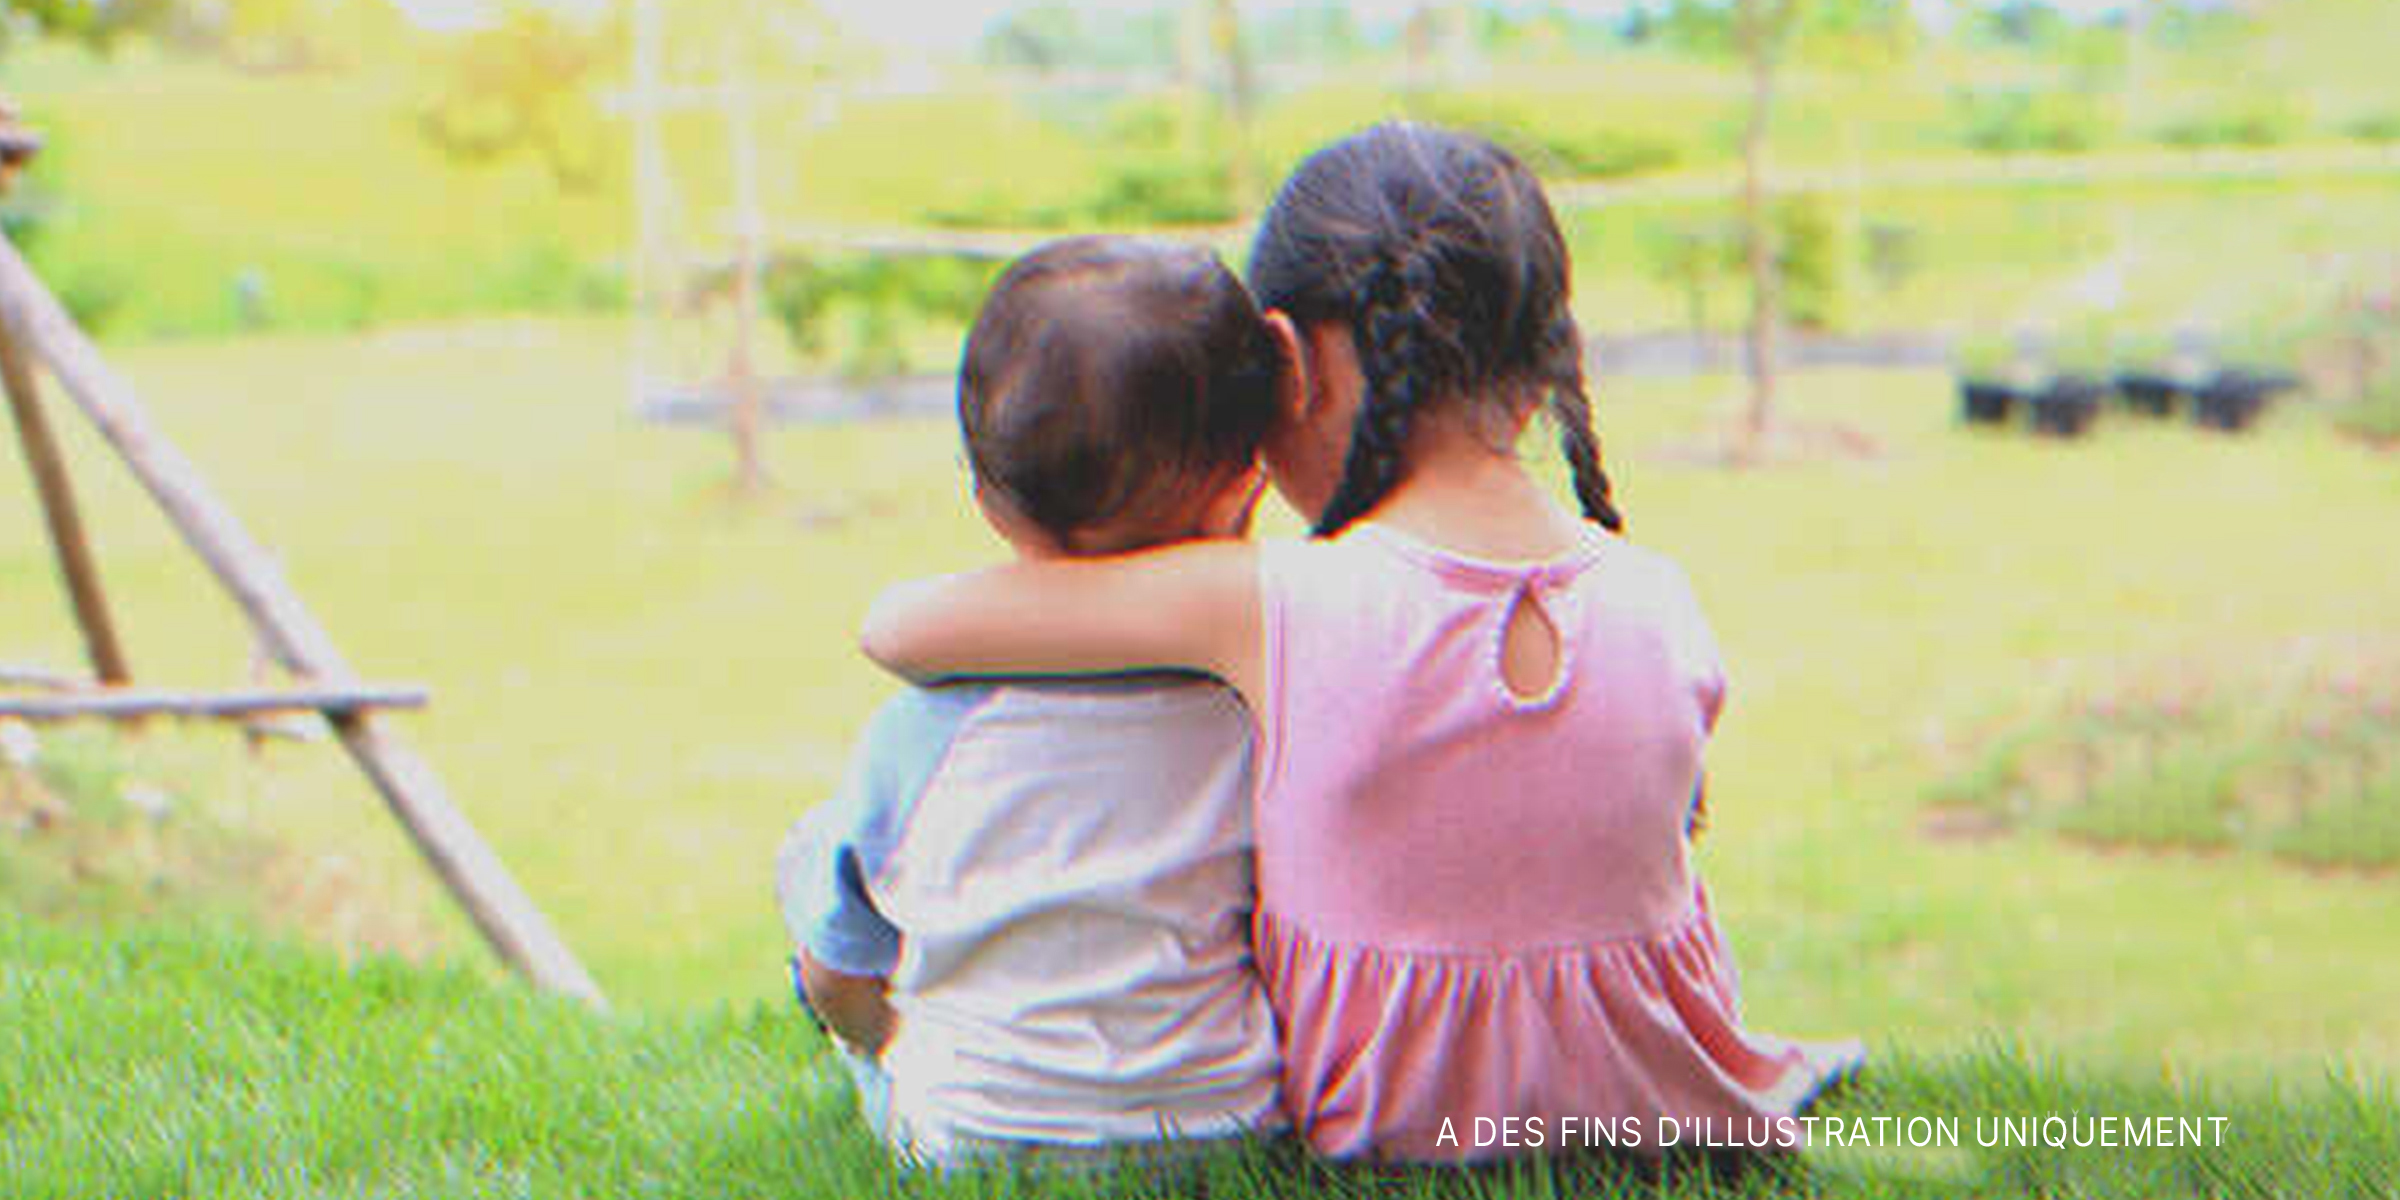 Une petite fille serrant son frère dans ses bras | Source : Shutterstock